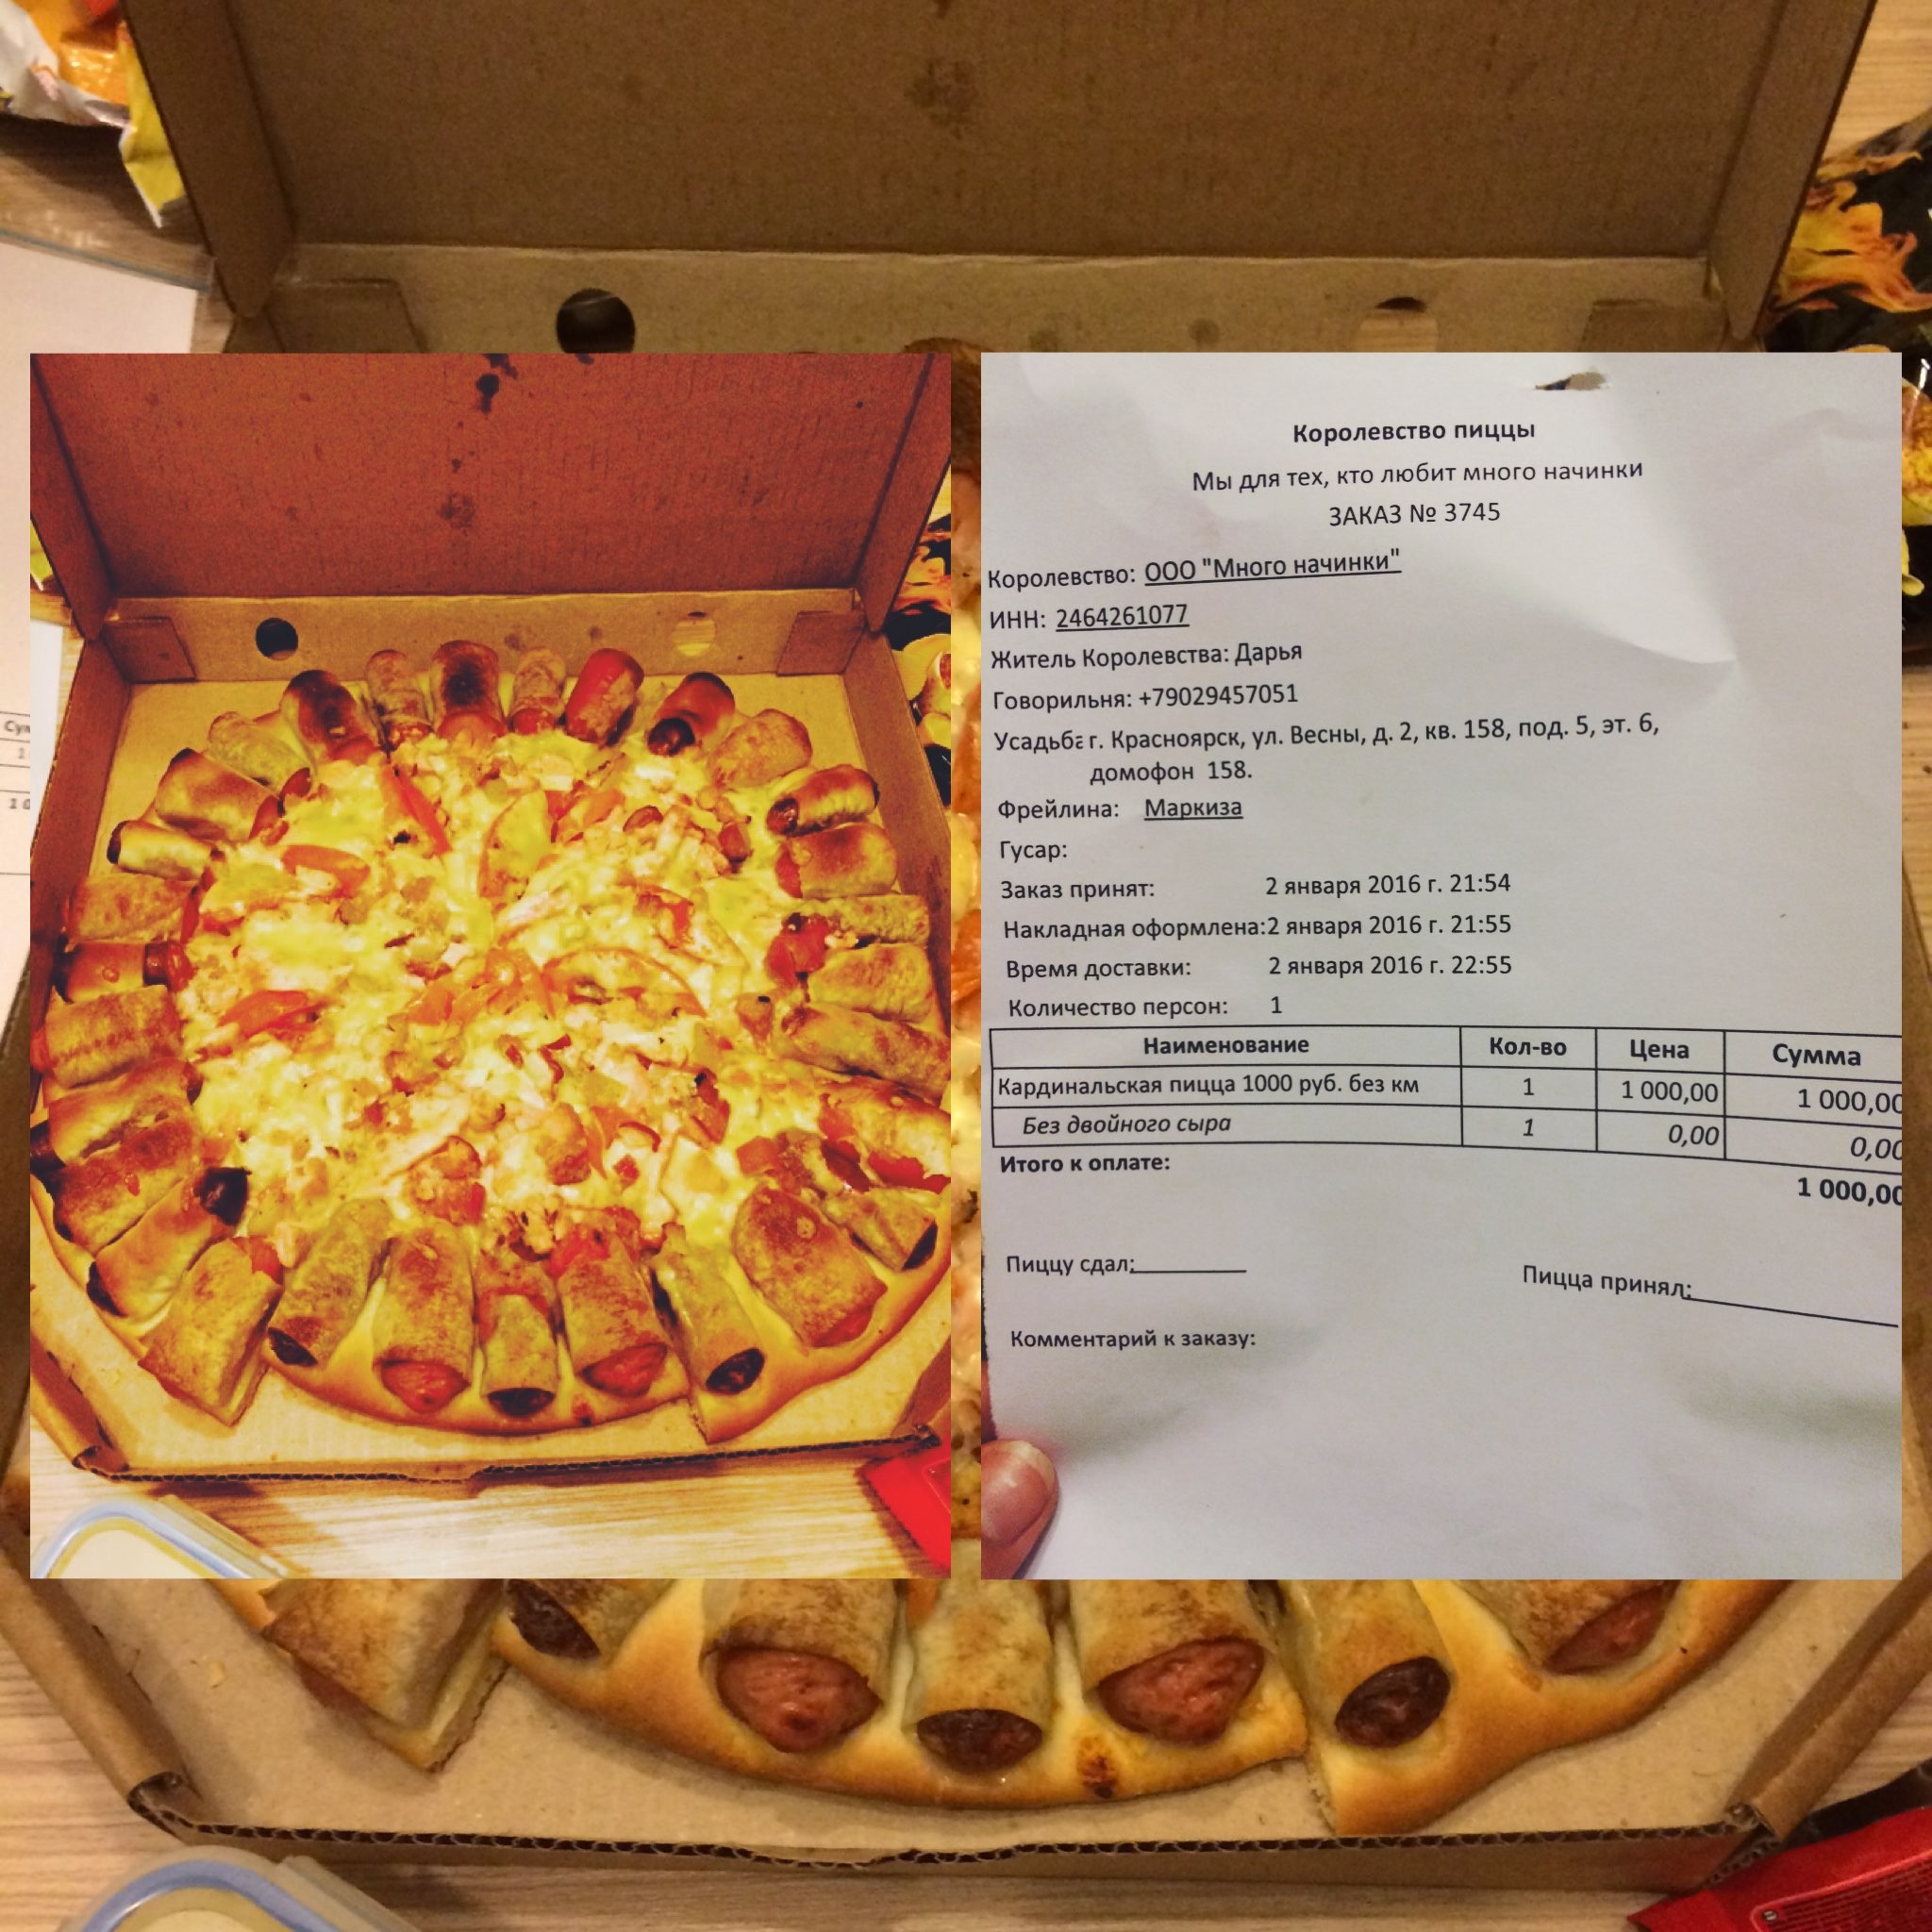 лучшая пицца в красноярске отзывы фото 93